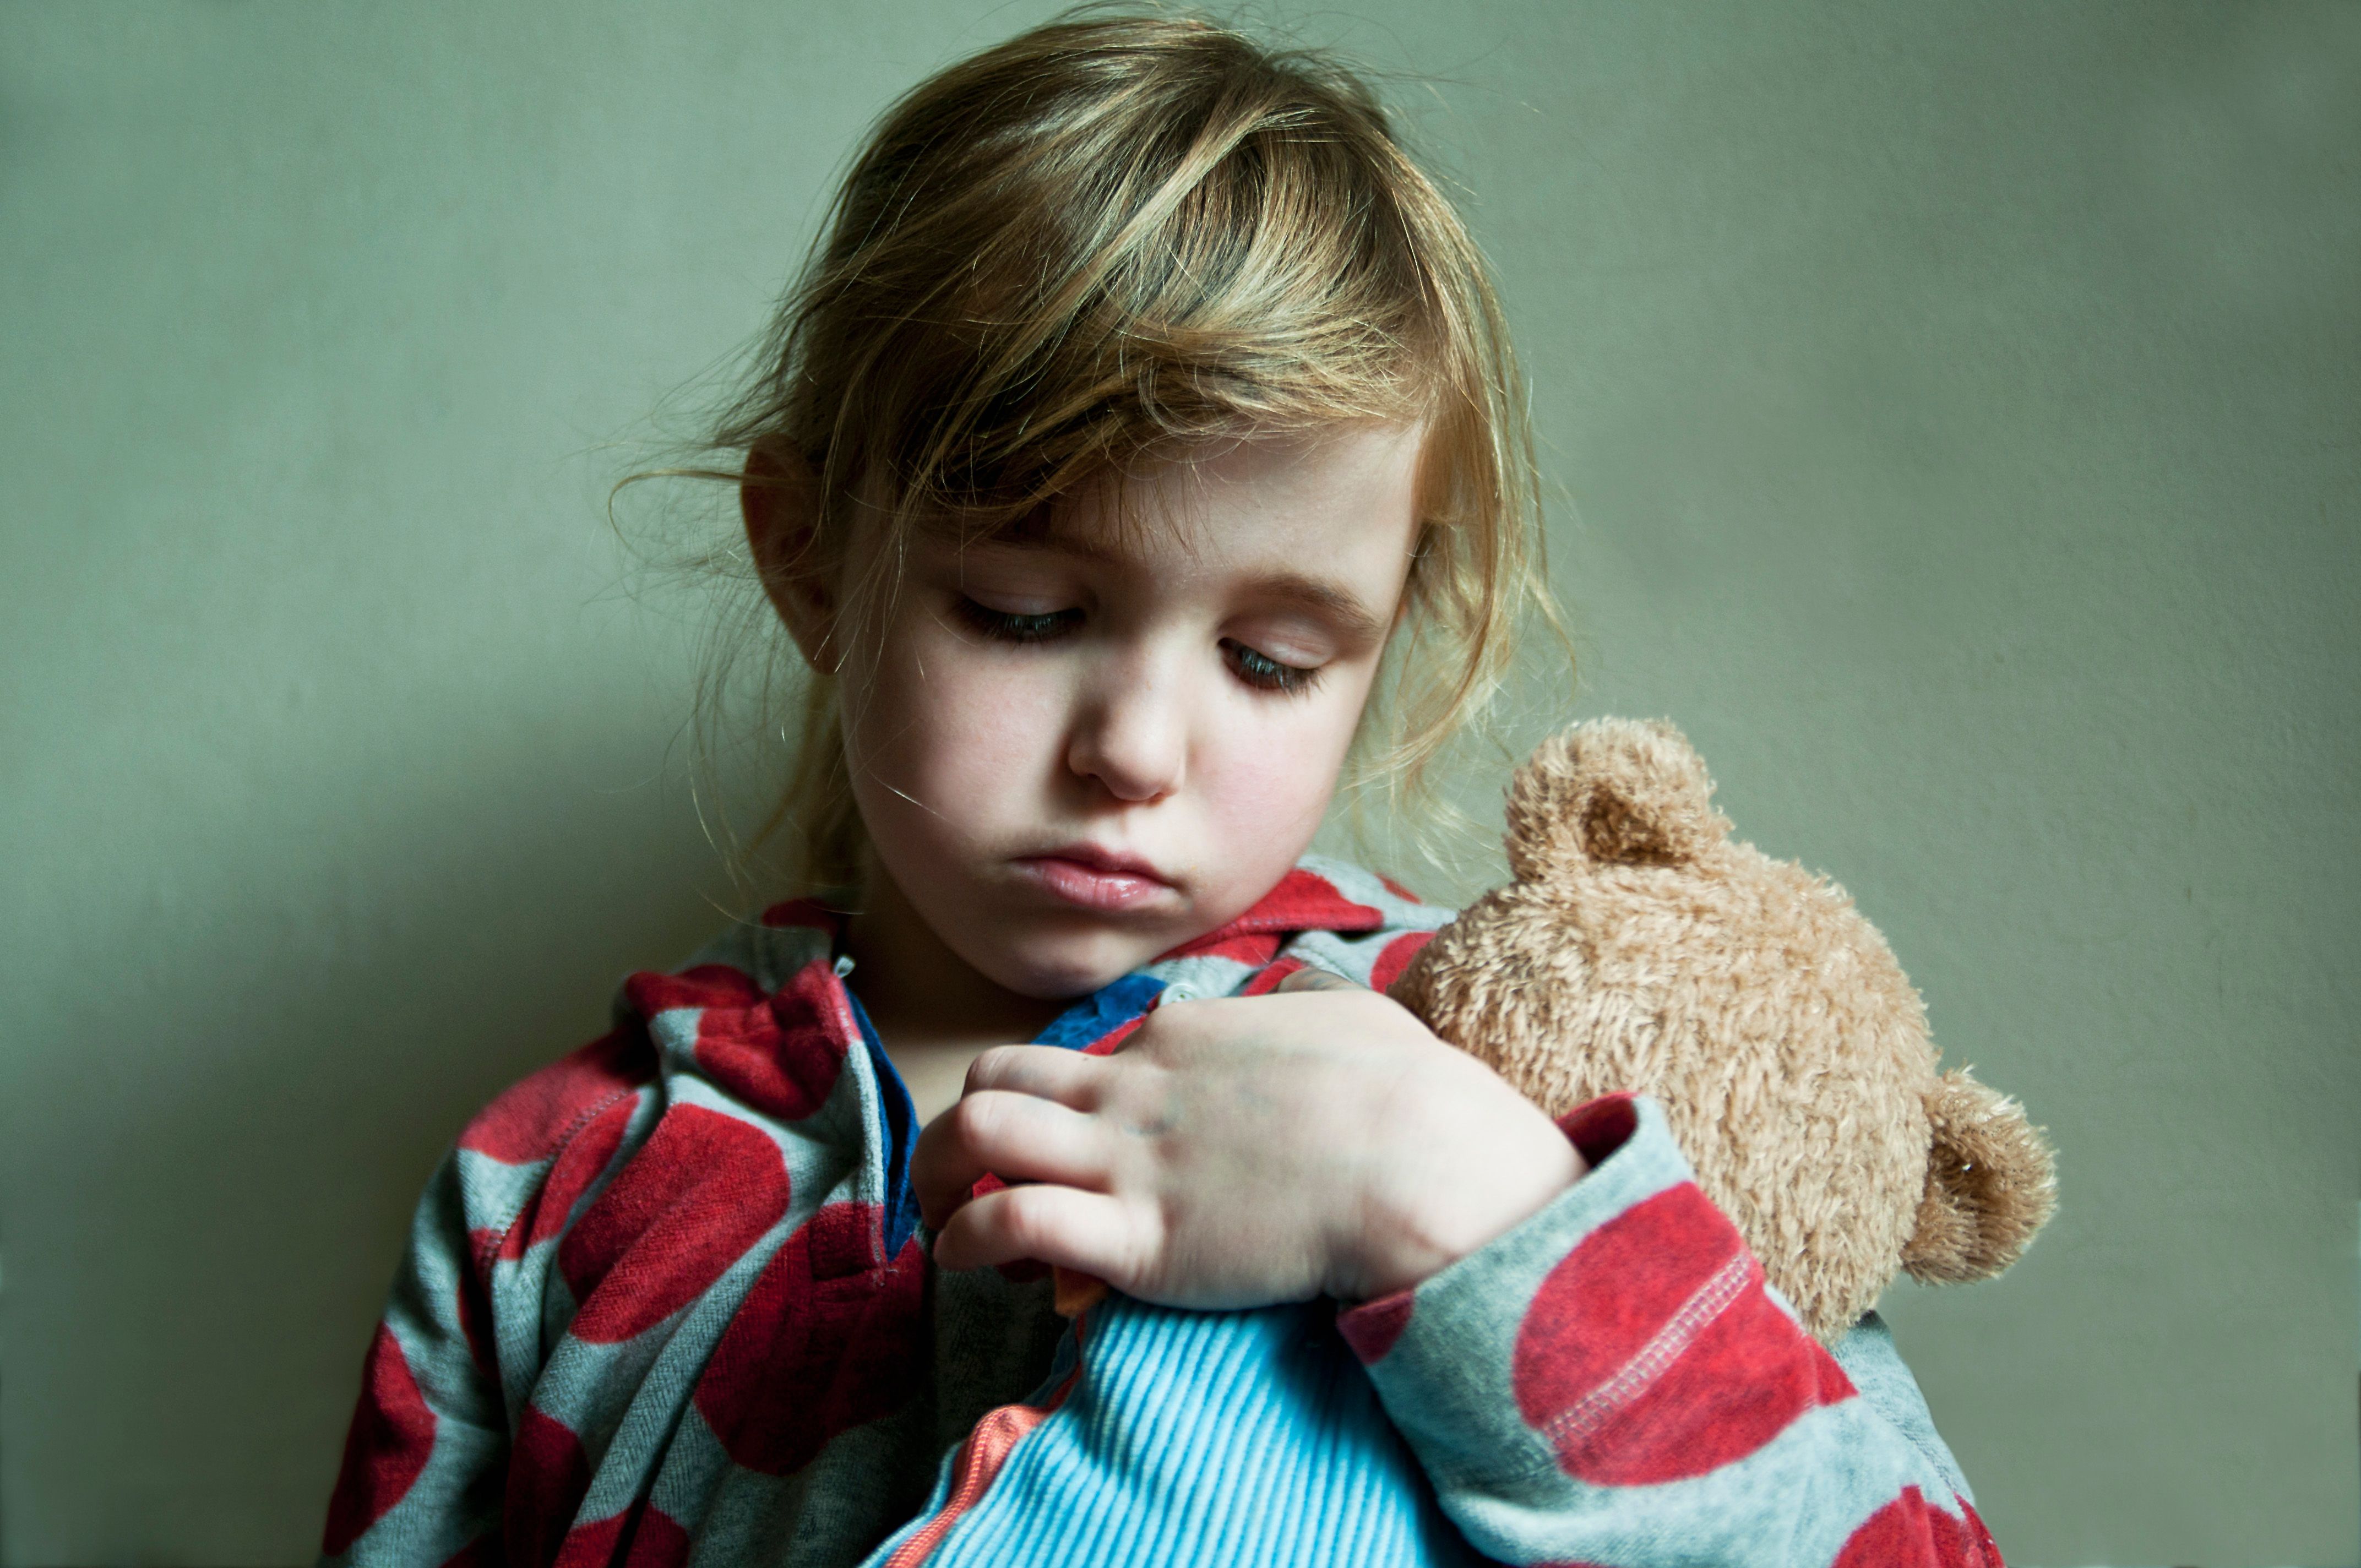 10 علامات للاكتئاب عند الأطفال عليك عدم تجاهلها • نون بوست